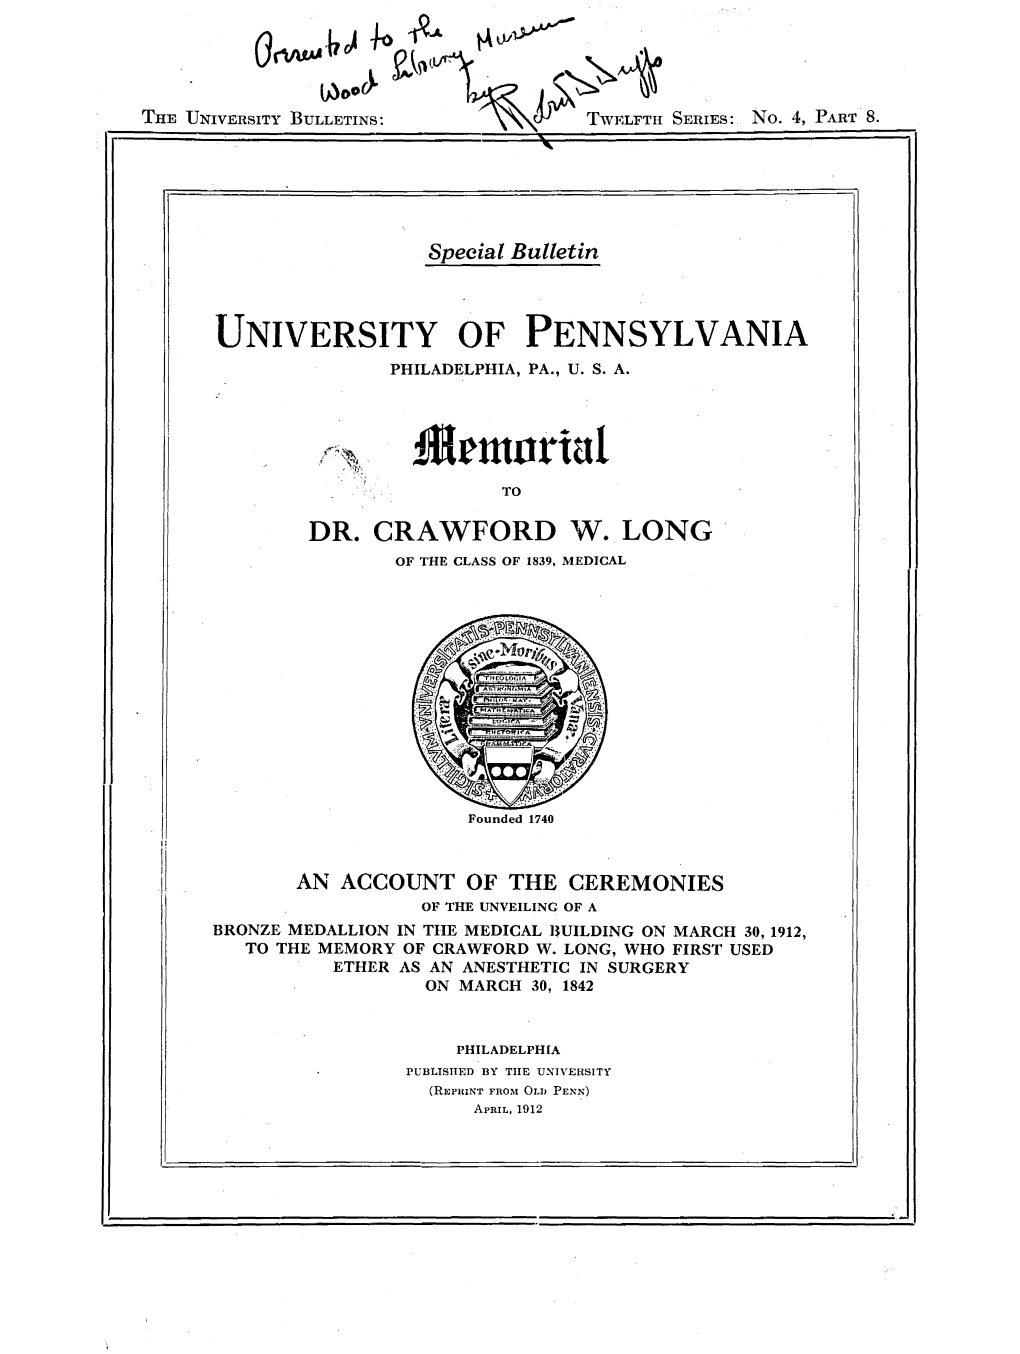 Dr. Crawford W